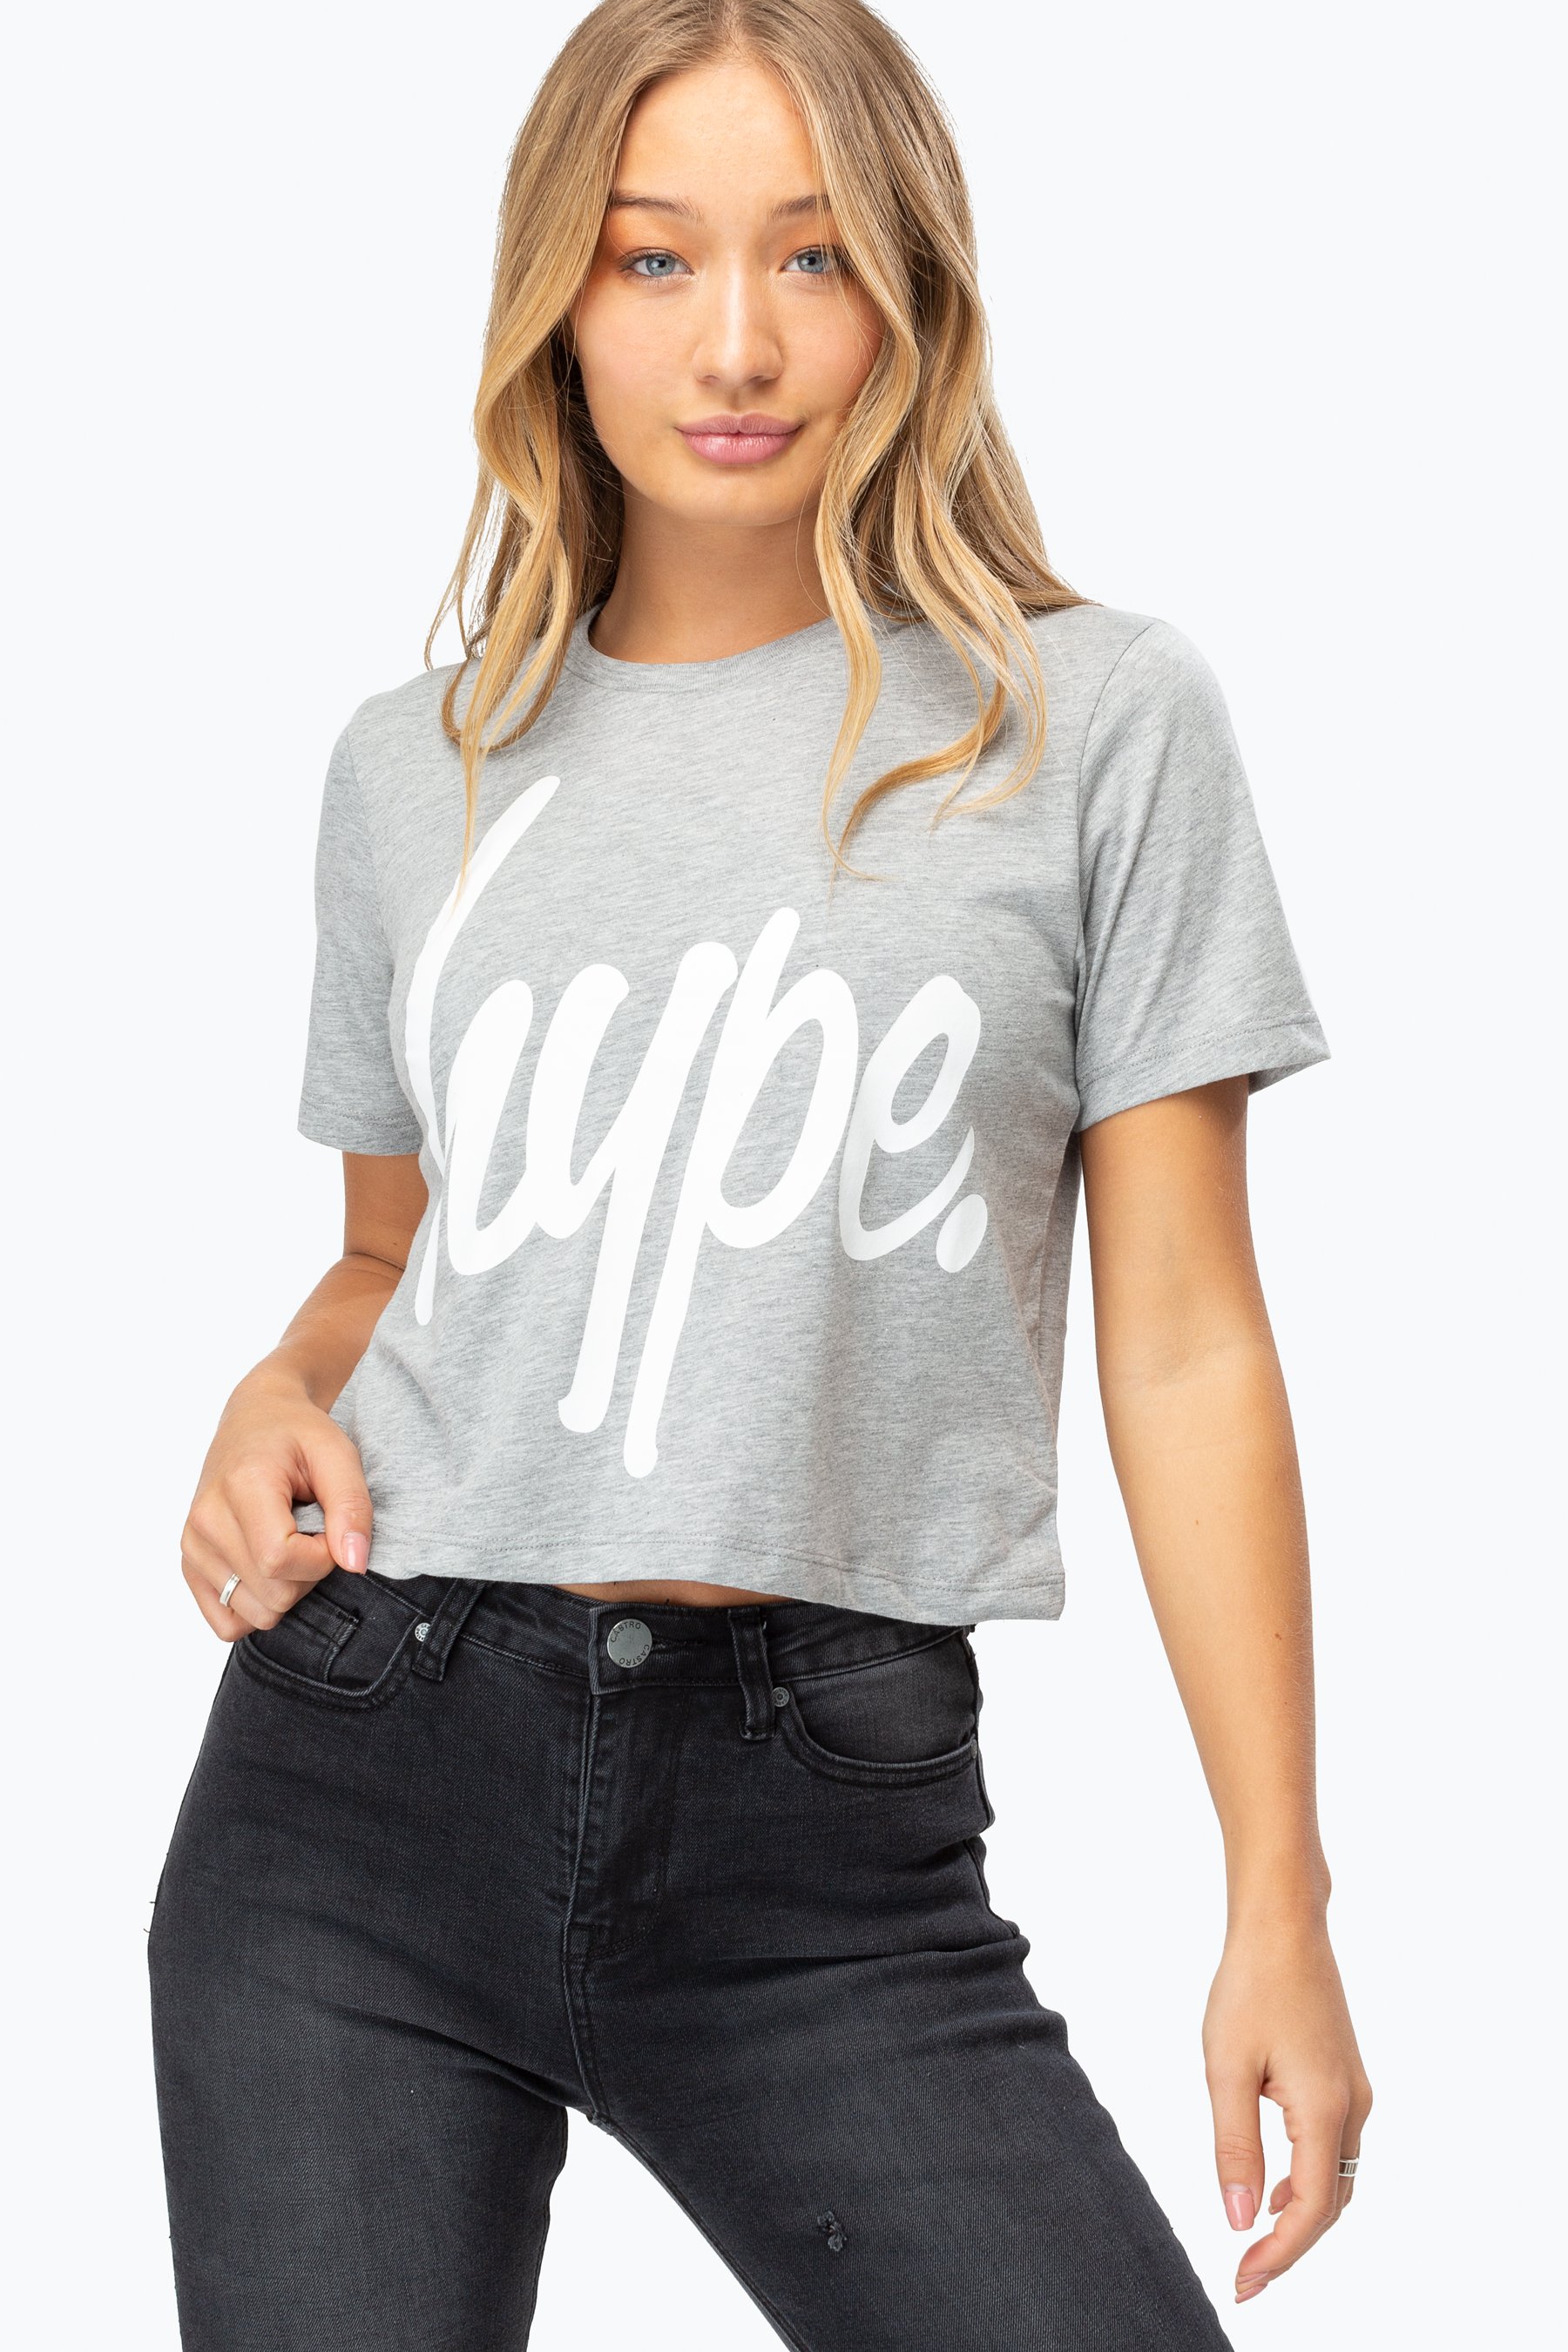 Hype Grey Script Womens Crop T-Shirt | Size 12